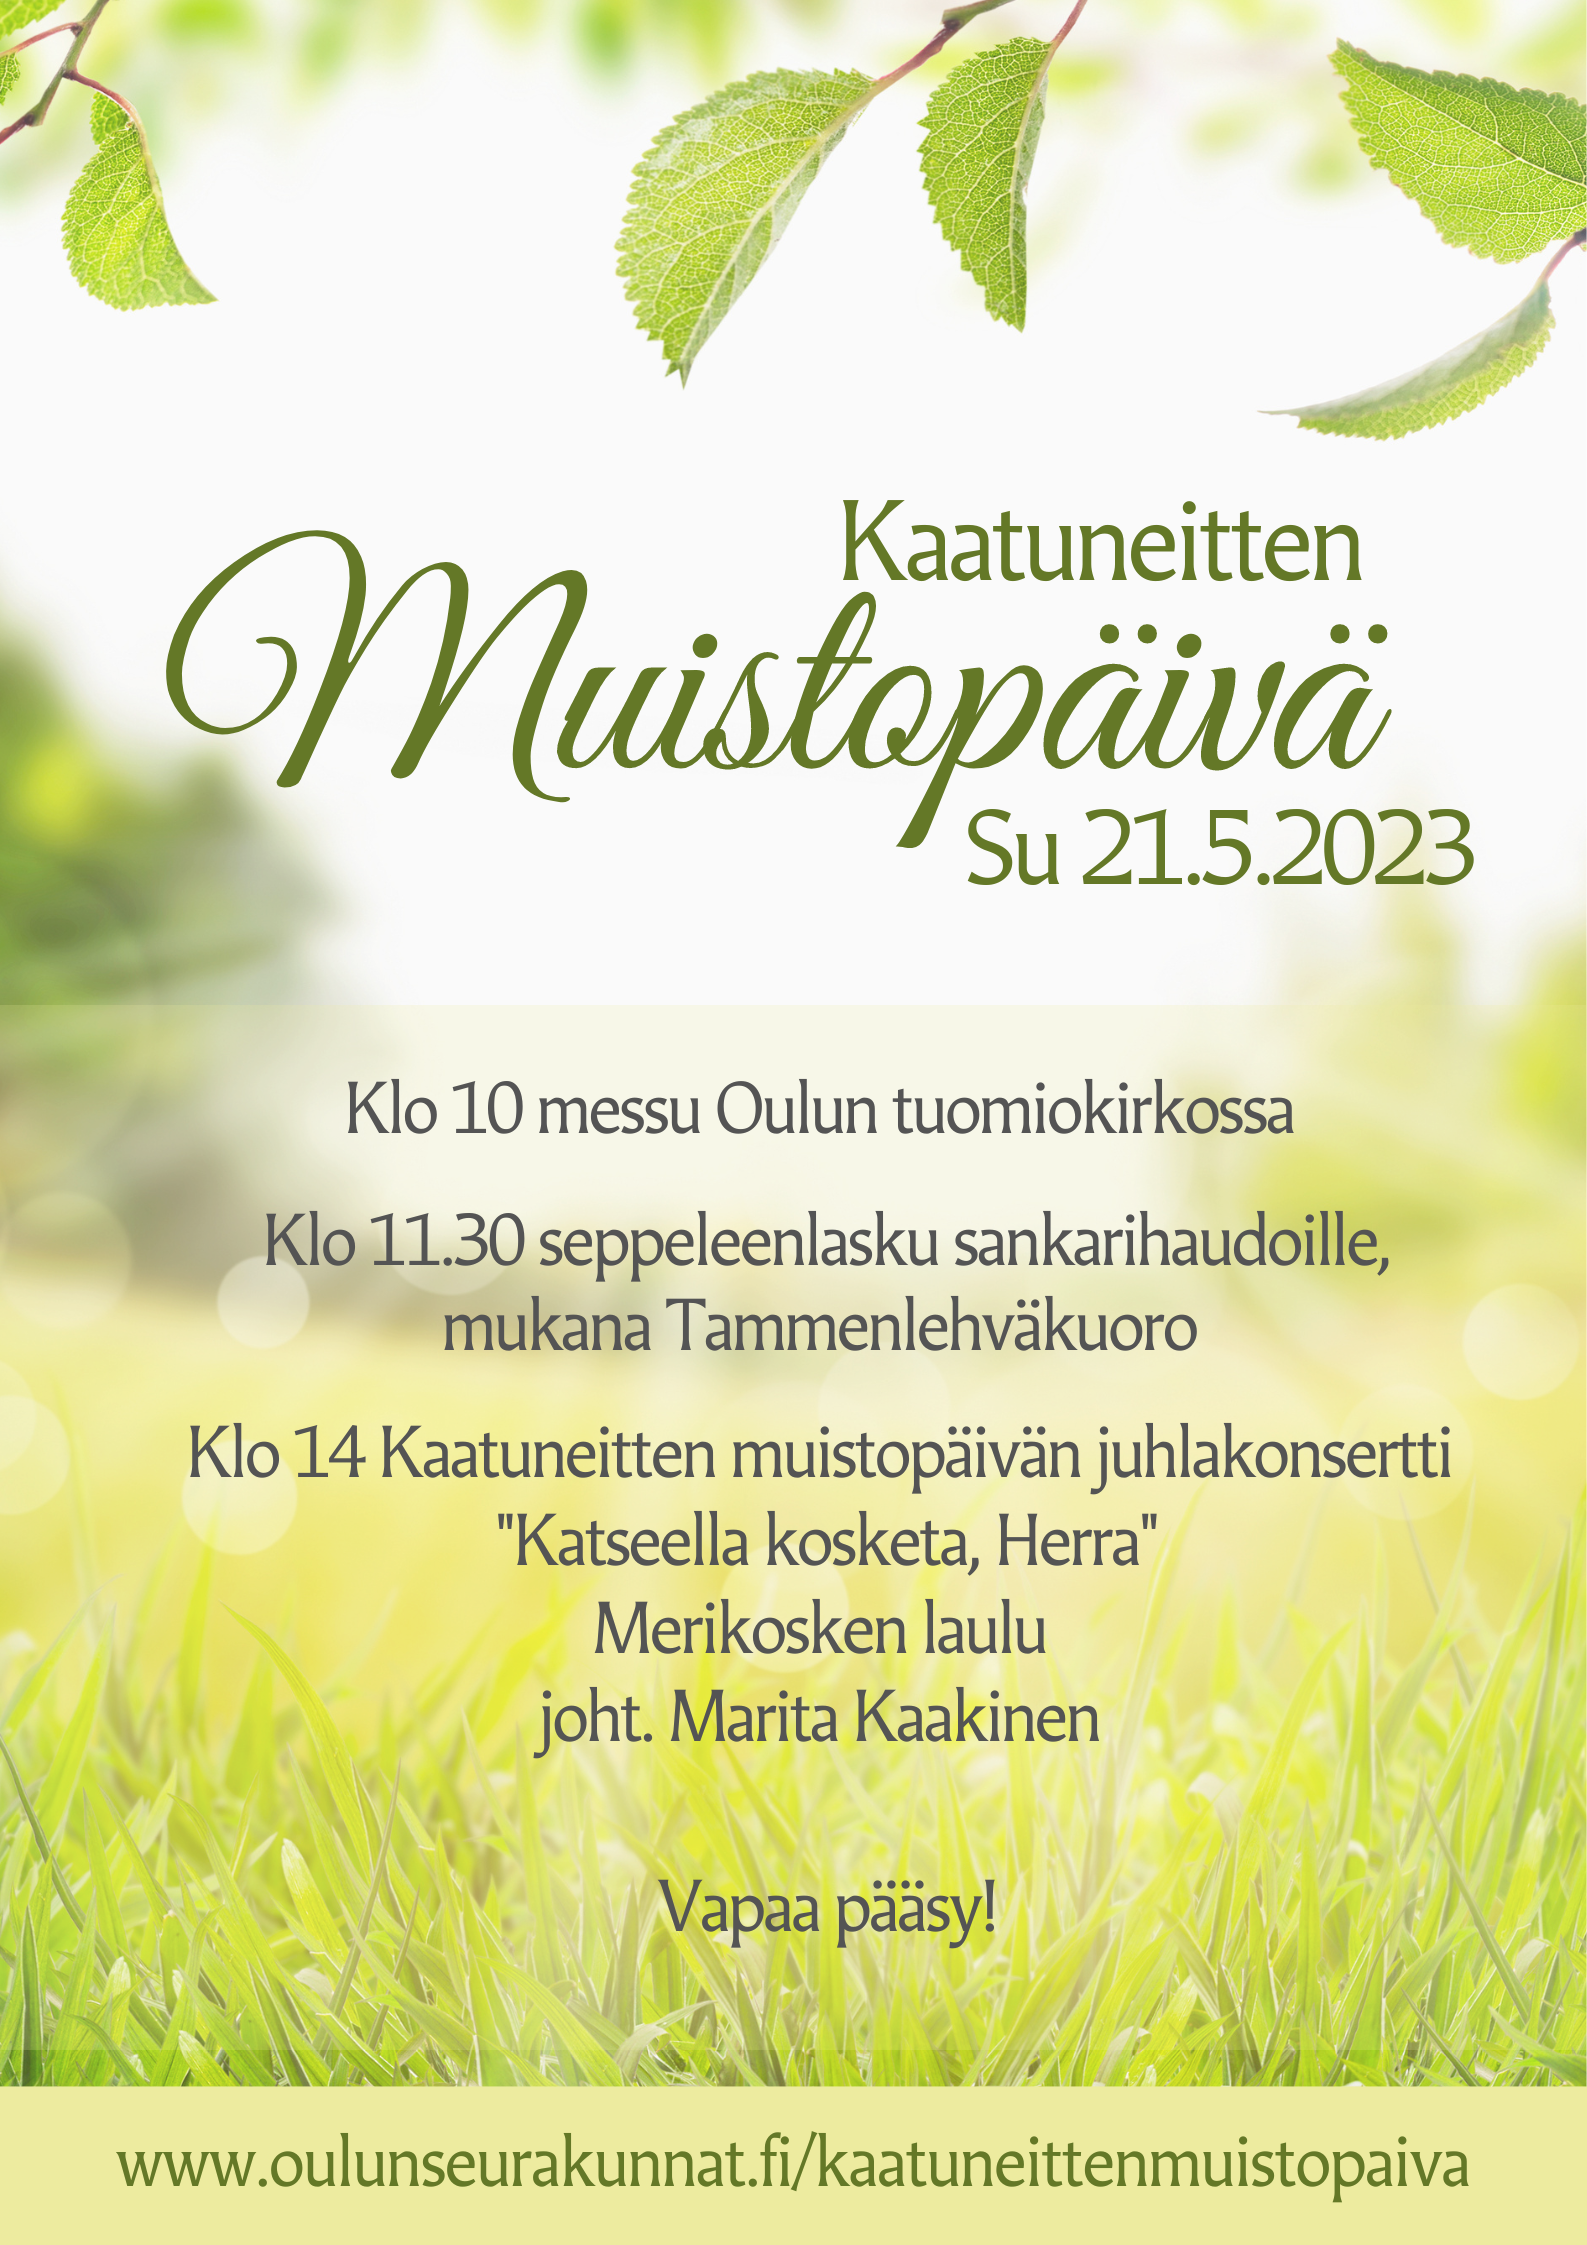 Keväisessä vihreässä taustassa teksti Kaatuneitten muistopäivä su 21.5. ja ohjelma, kuten tapahtuman kuvaustekstissä. Kuva: Harriet Urponen